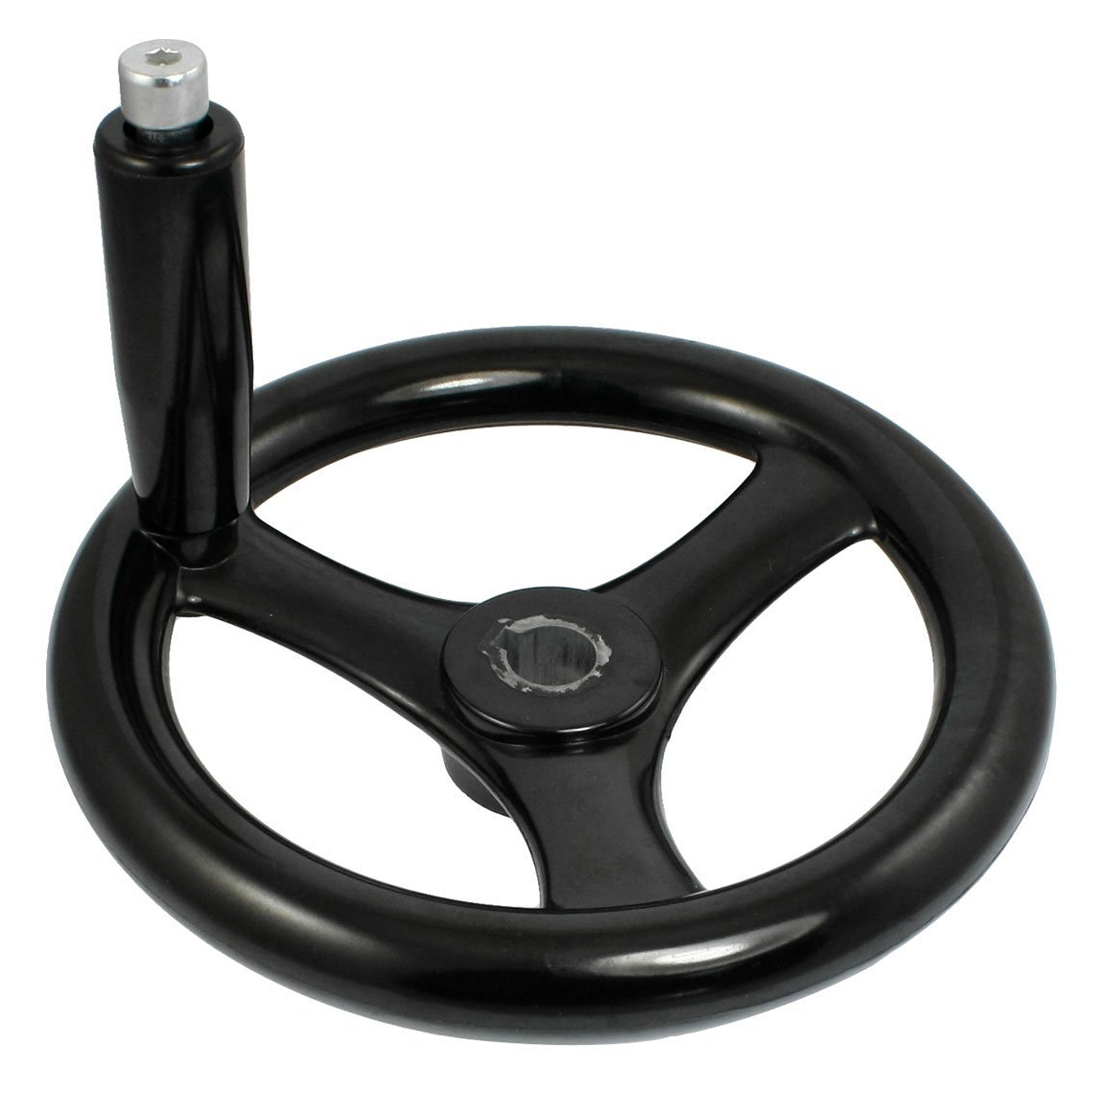 Gtbl sort 18mm x 200mm 3 eger håndhjul med roterende håndtag